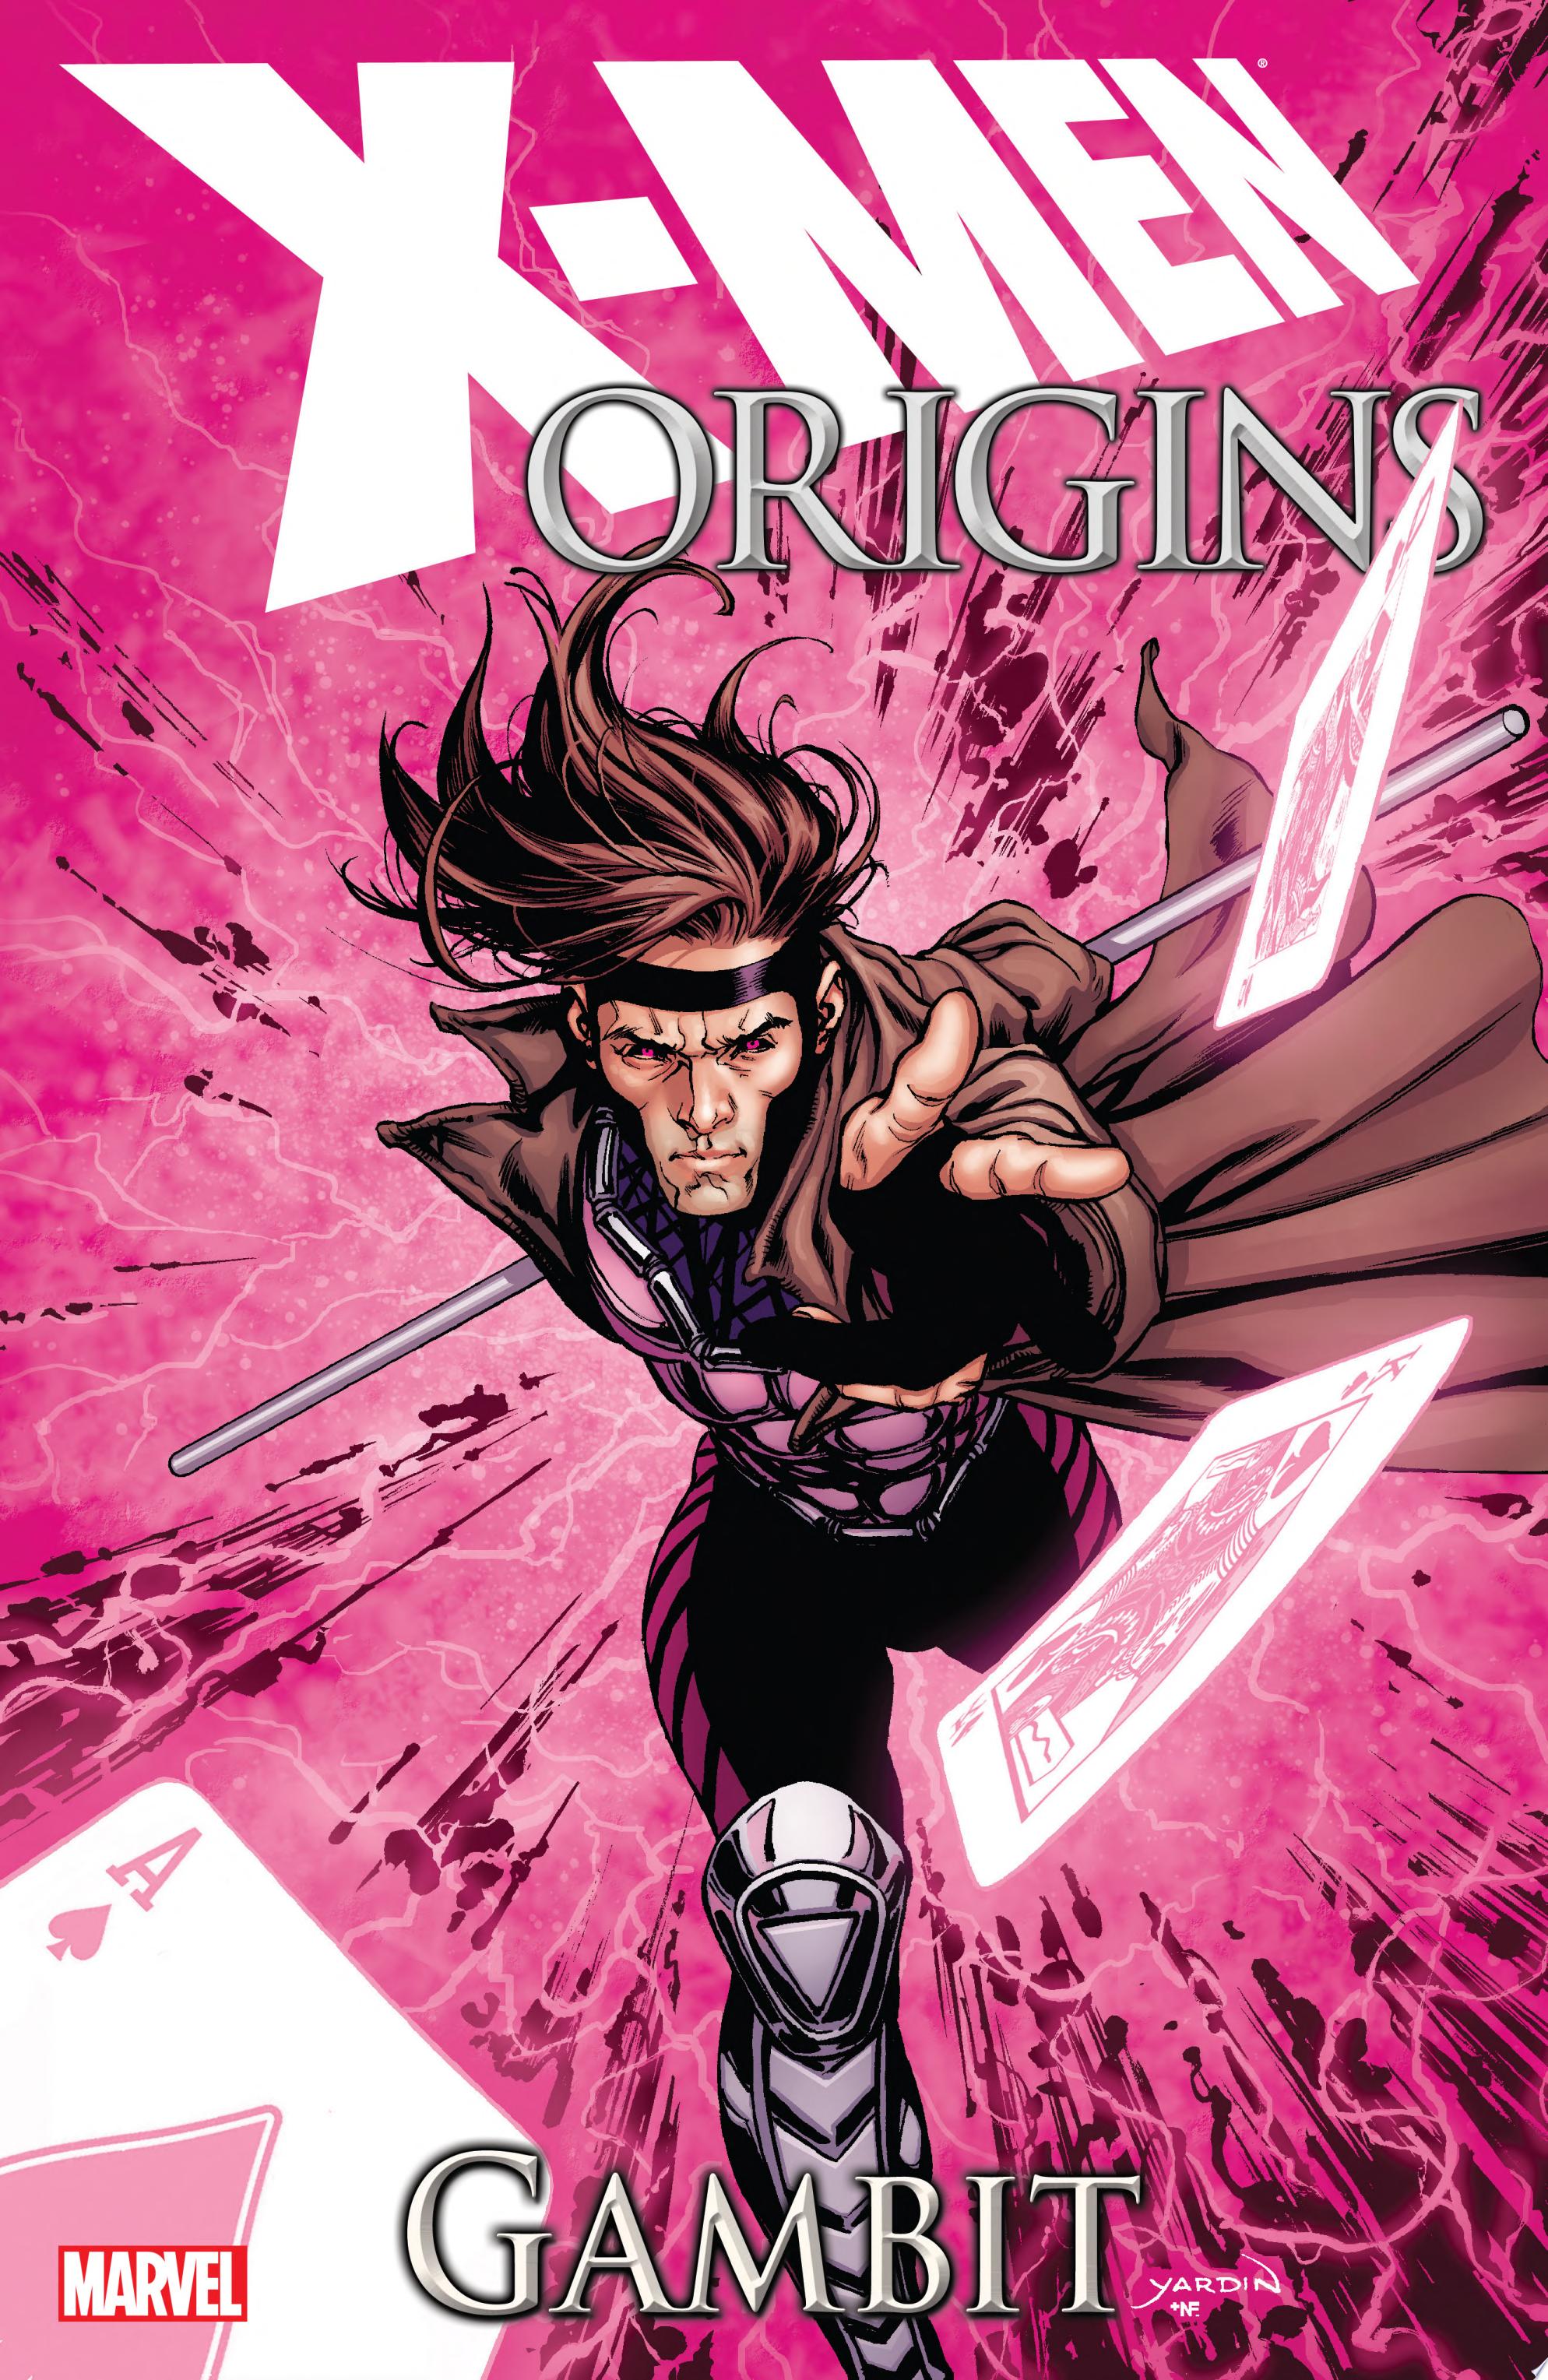 Image for "X-Men Origins"